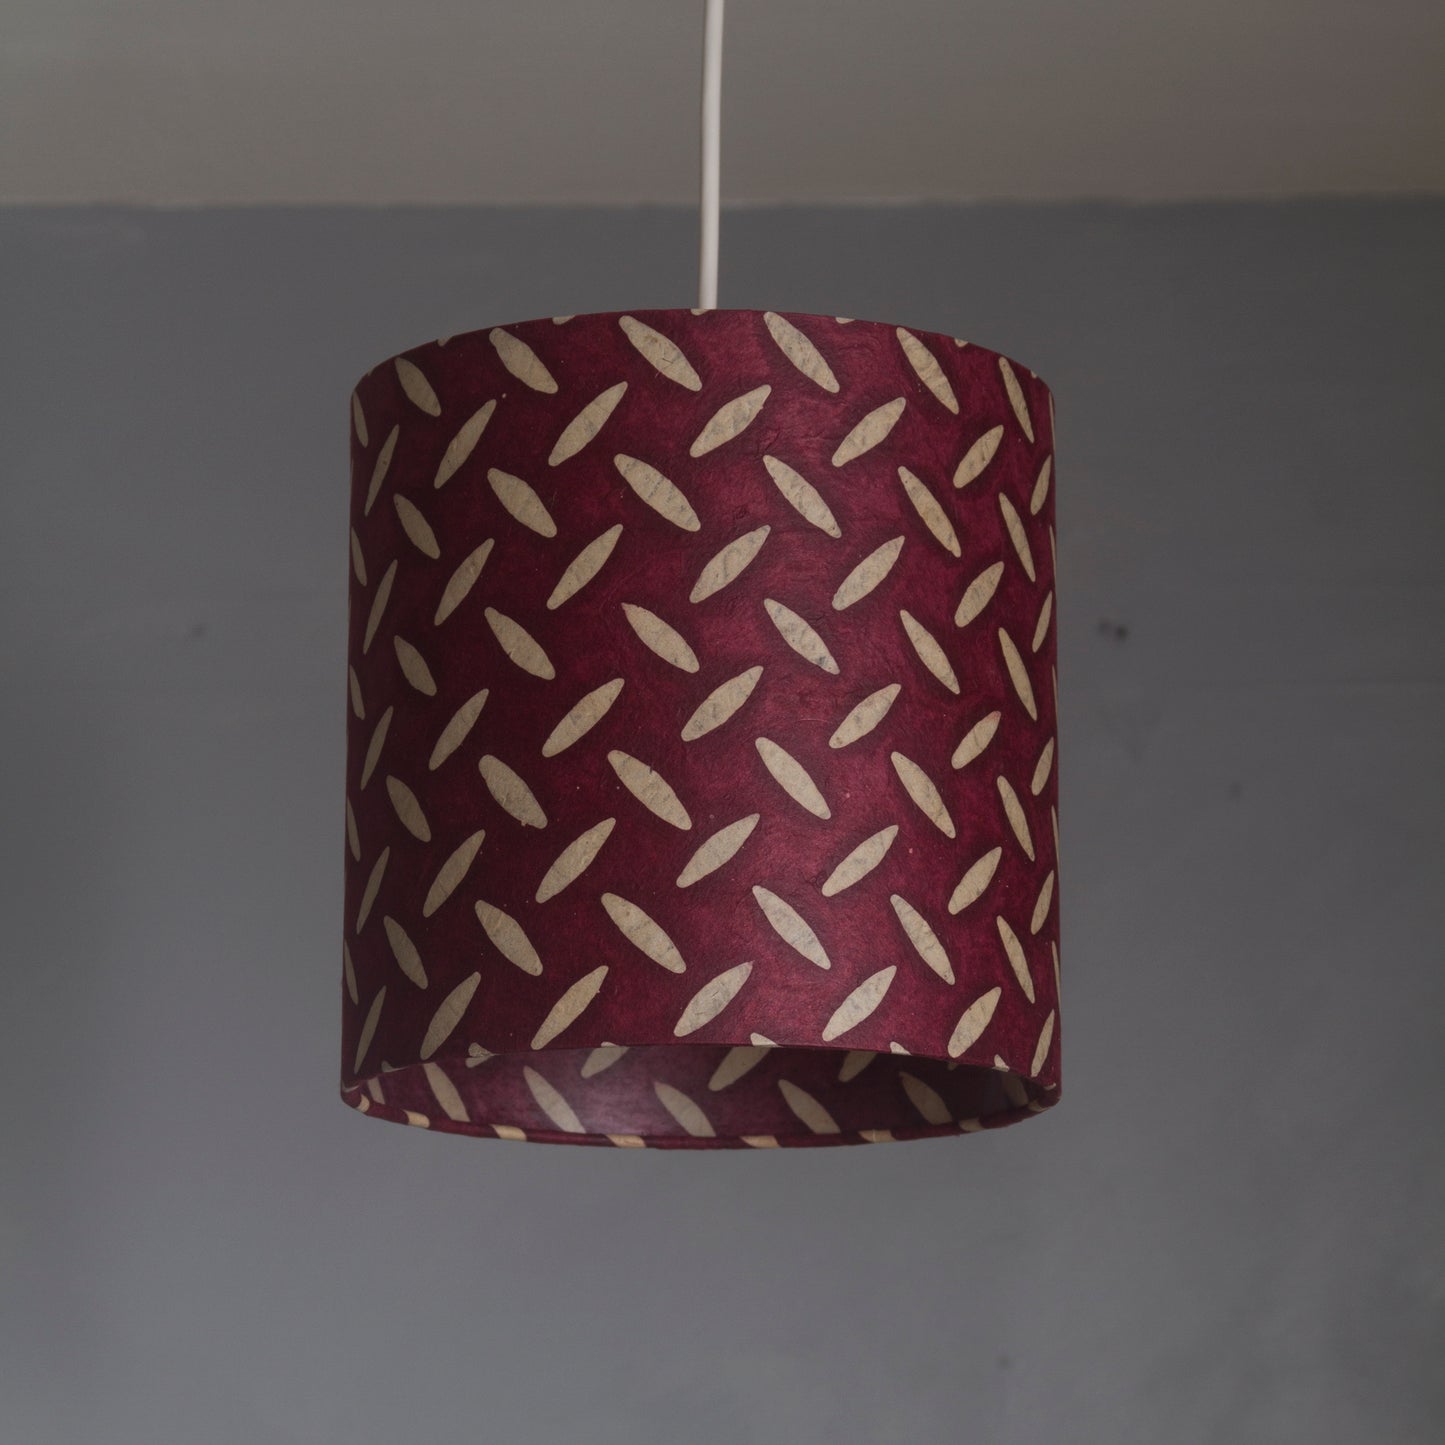 3 Tier Lamp Shade - P14 - Batik Tread Plate Cranberry, 40cm x 20cm, 30cm x 17.5cm & 20cm x 15cm